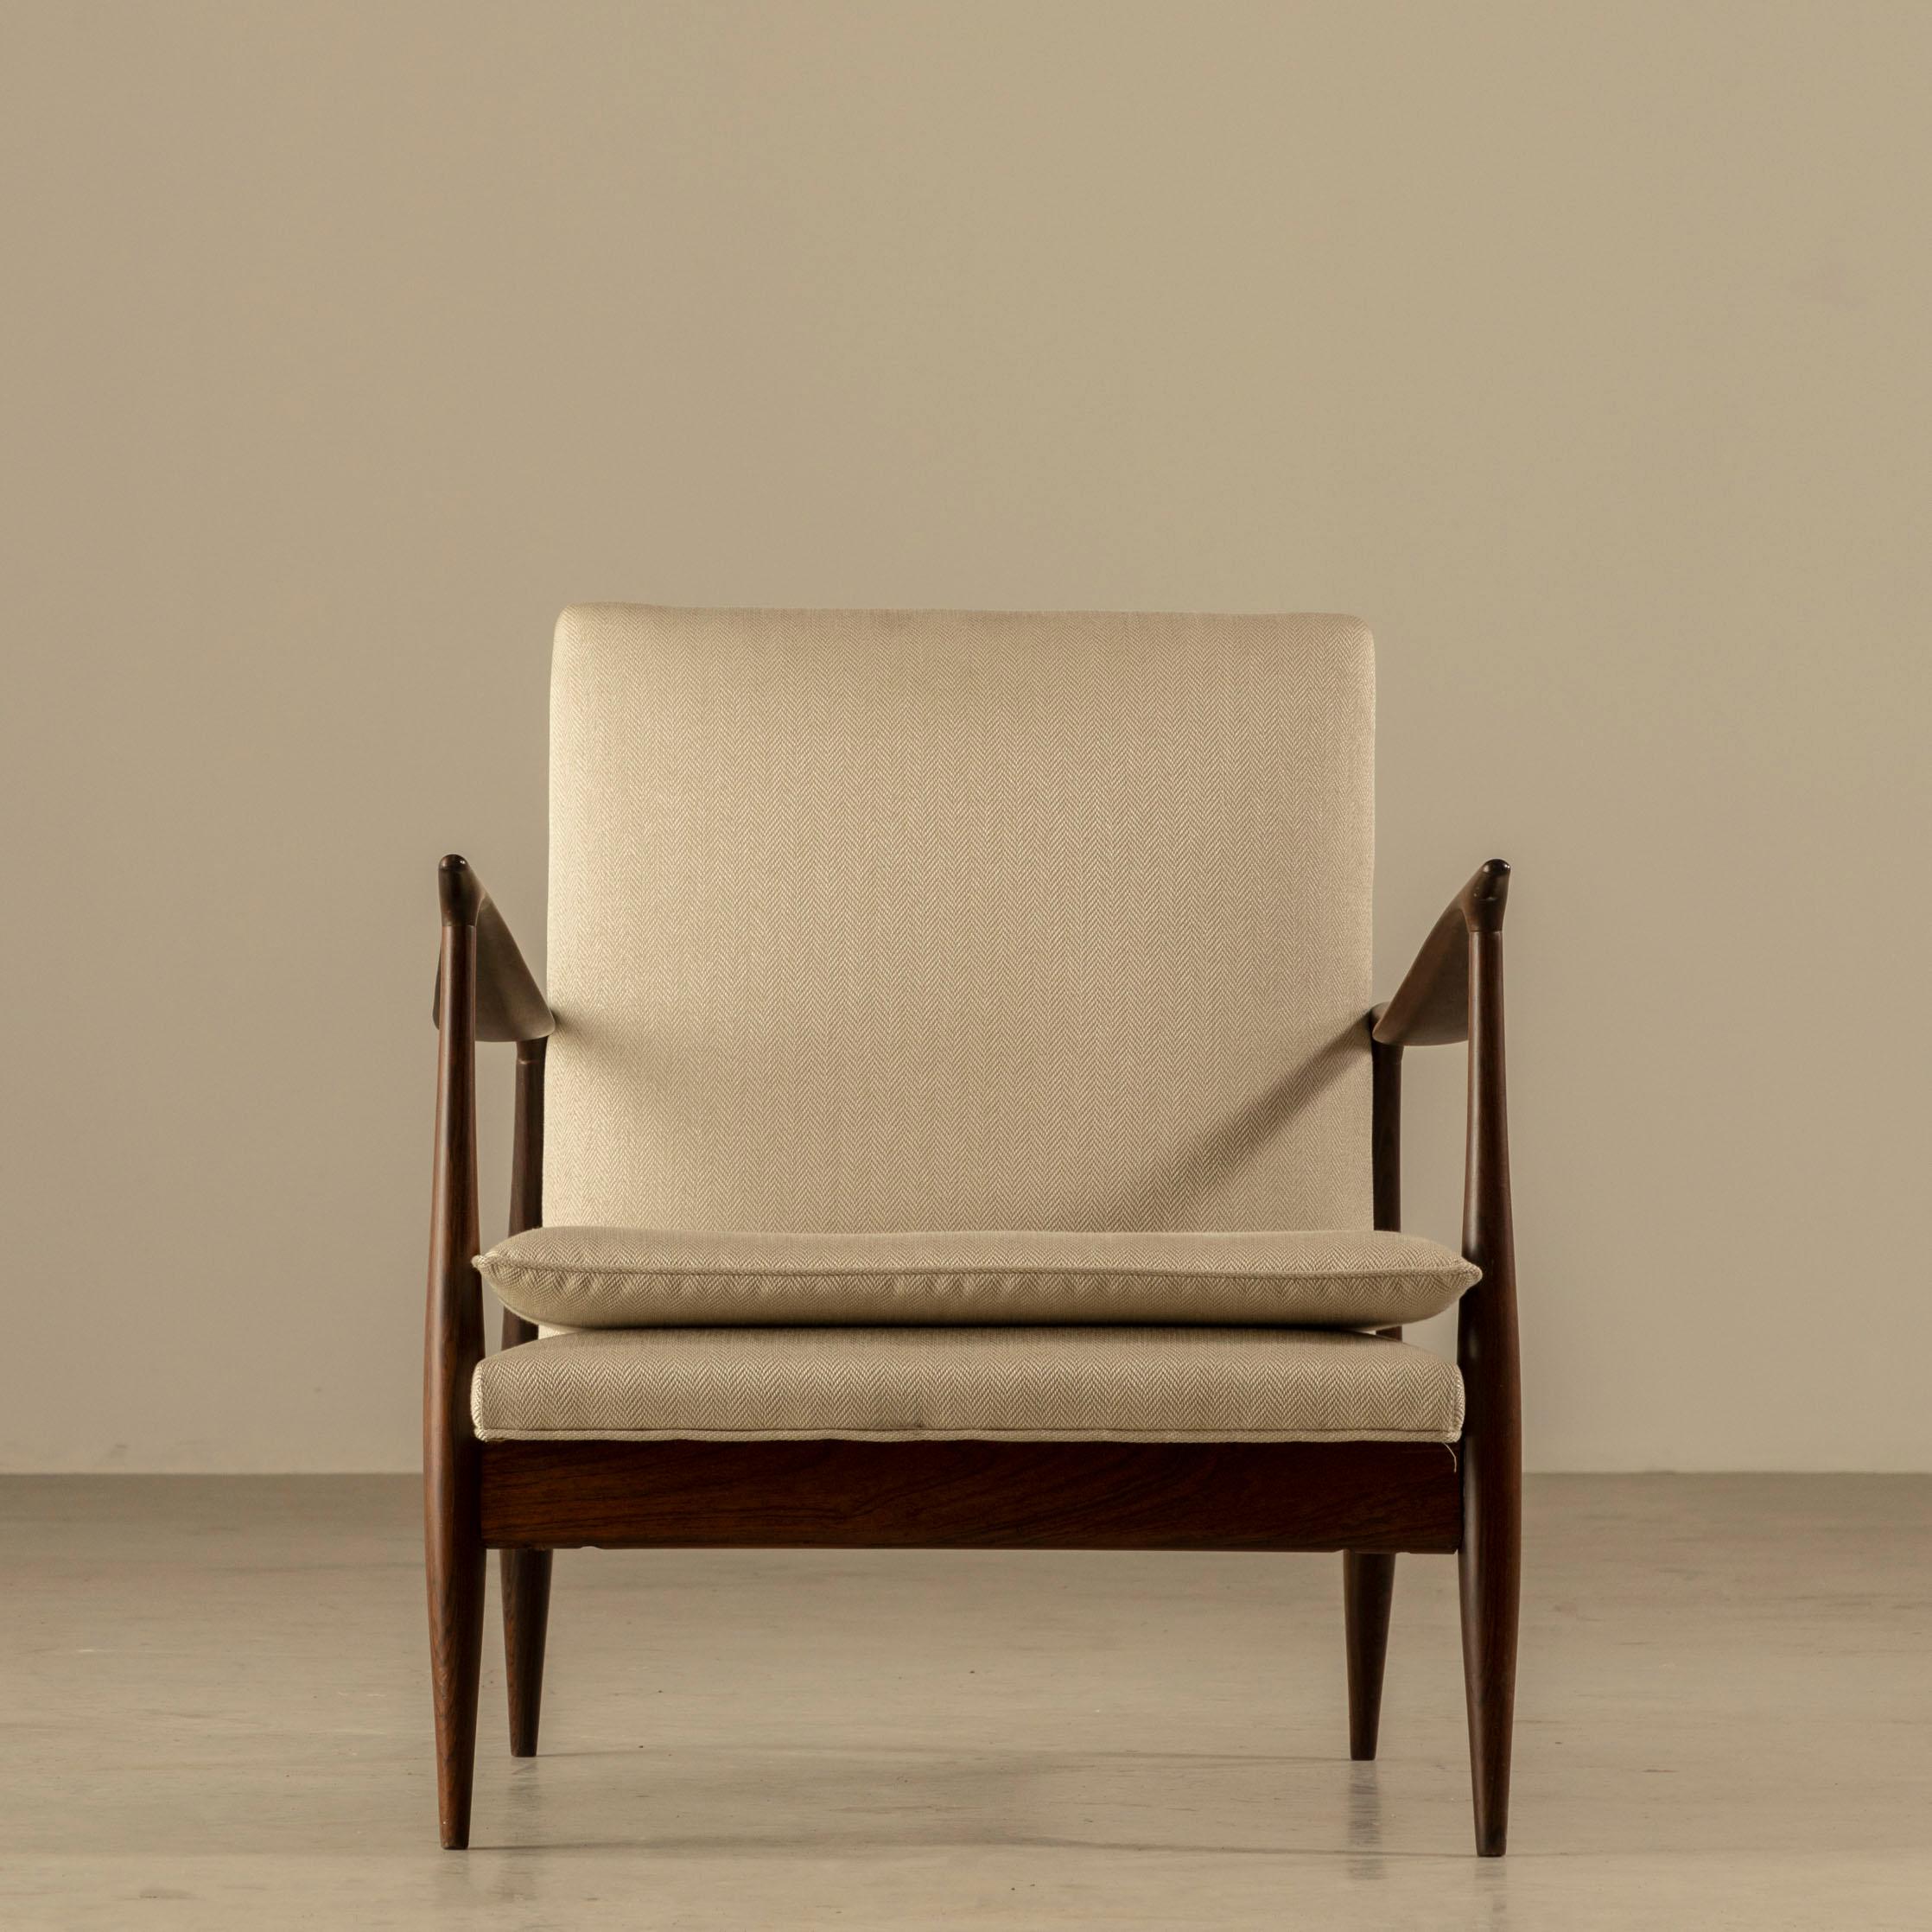 Diese Loungesessel von Giuseppe Scapinelli sind ein beeindruckendes Beispiel für modernes brasilianisches Design aus der Mitte des Jahrhunderts. Die in den 60er Jahren entworfenen Stühle sind ein Zeugnis von Scapinellis einzigartigem Stil. Im